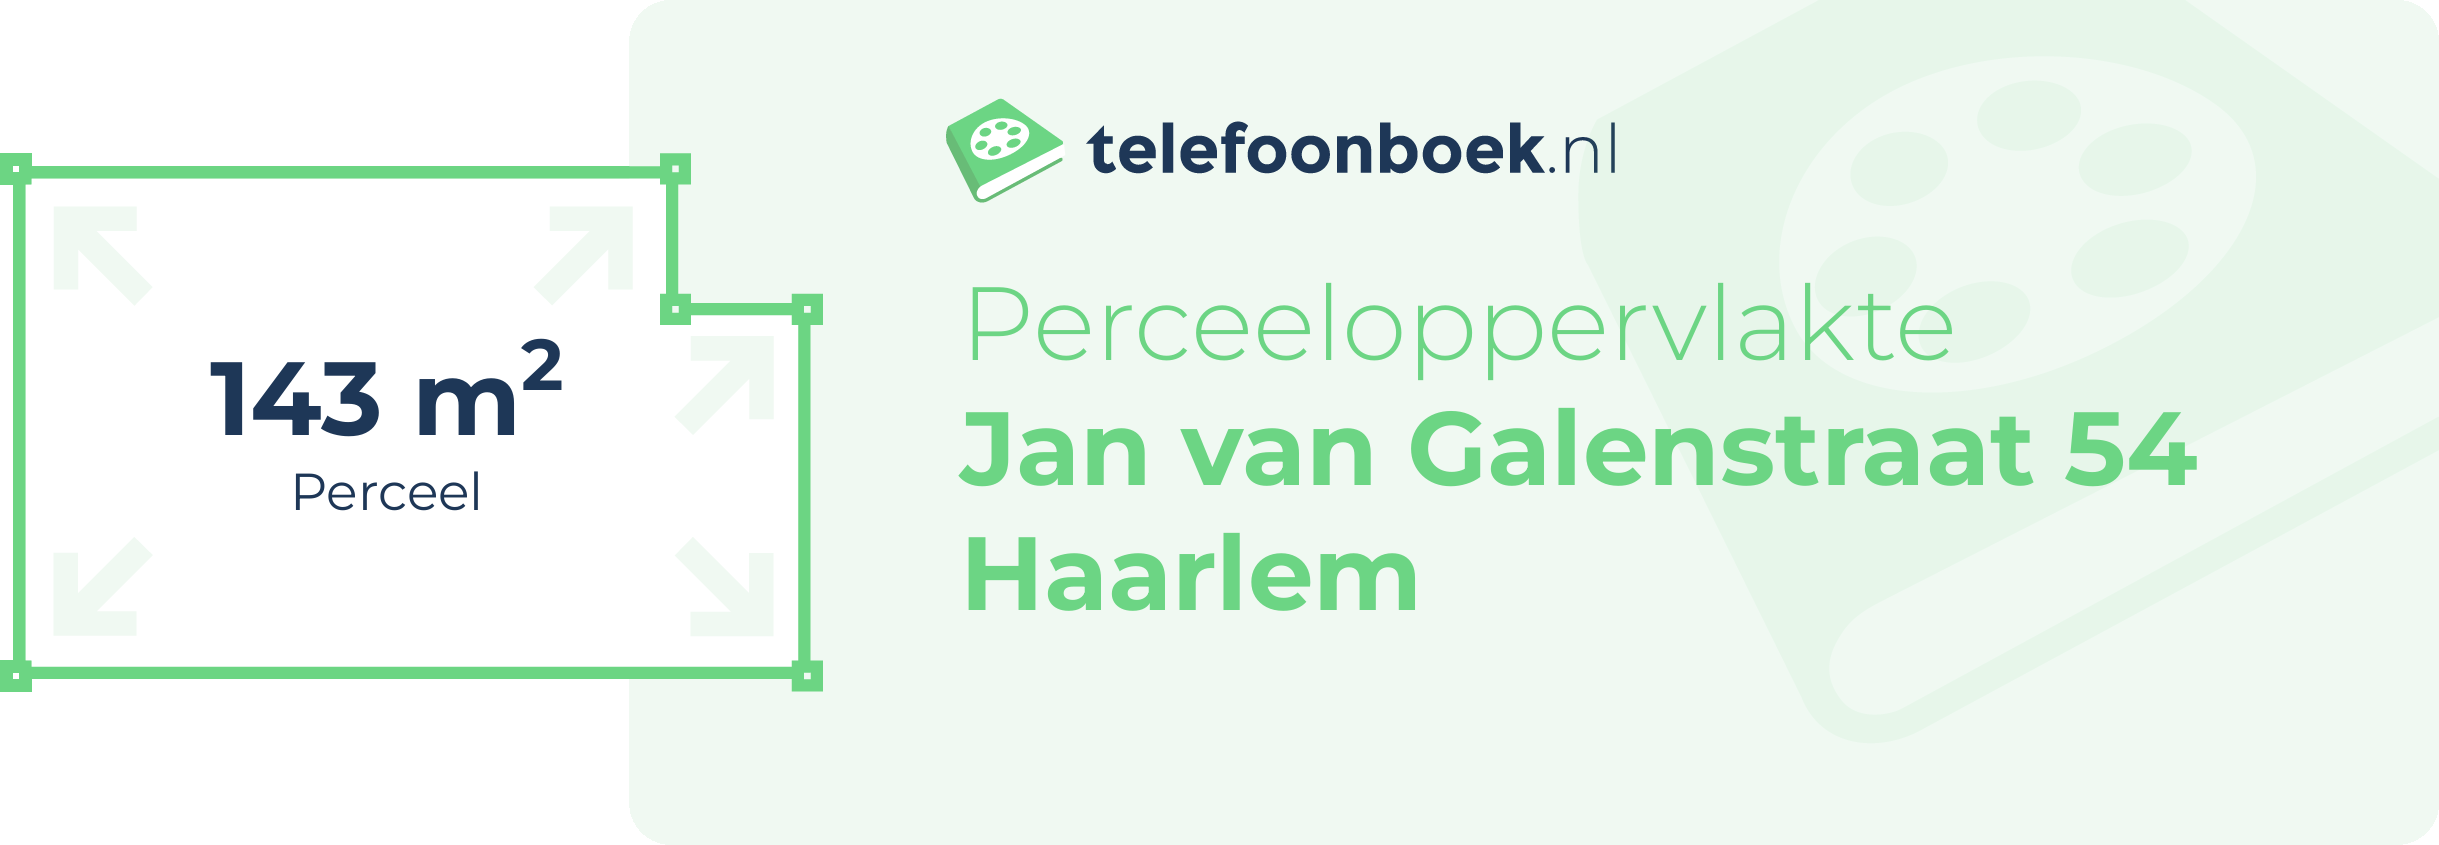 Perceeloppervlakte Jan Van Galenstraat 54 Haarlem